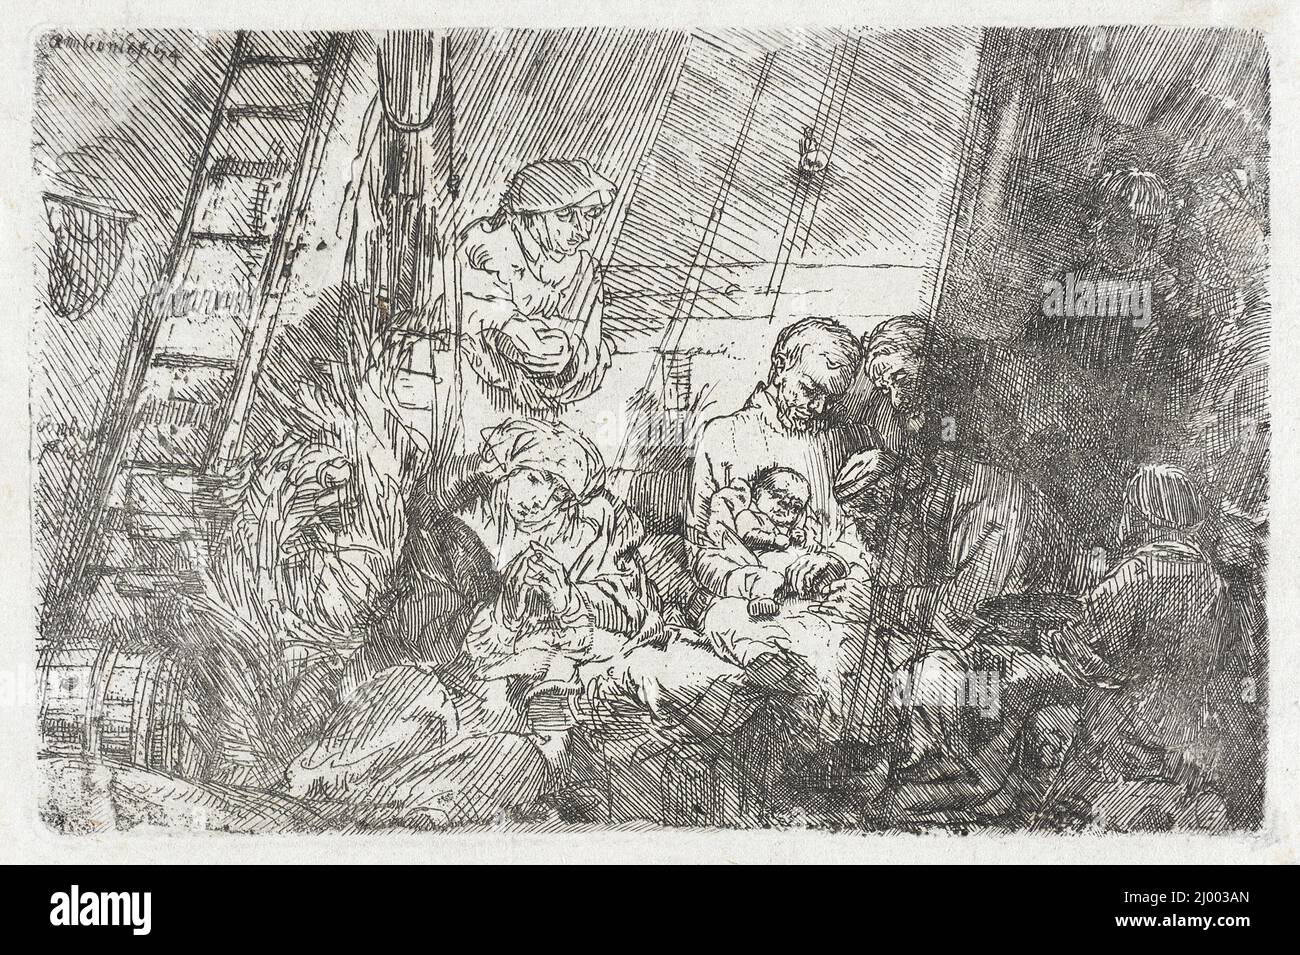 Beschneidung im Stall. Rembrandt Harmensz. Van Rijn (Niederlande, Leiden, 1606-1669). Holland, 1654 (später gedruckt). Drucke; Radierungen. Ätzen Stockfoto